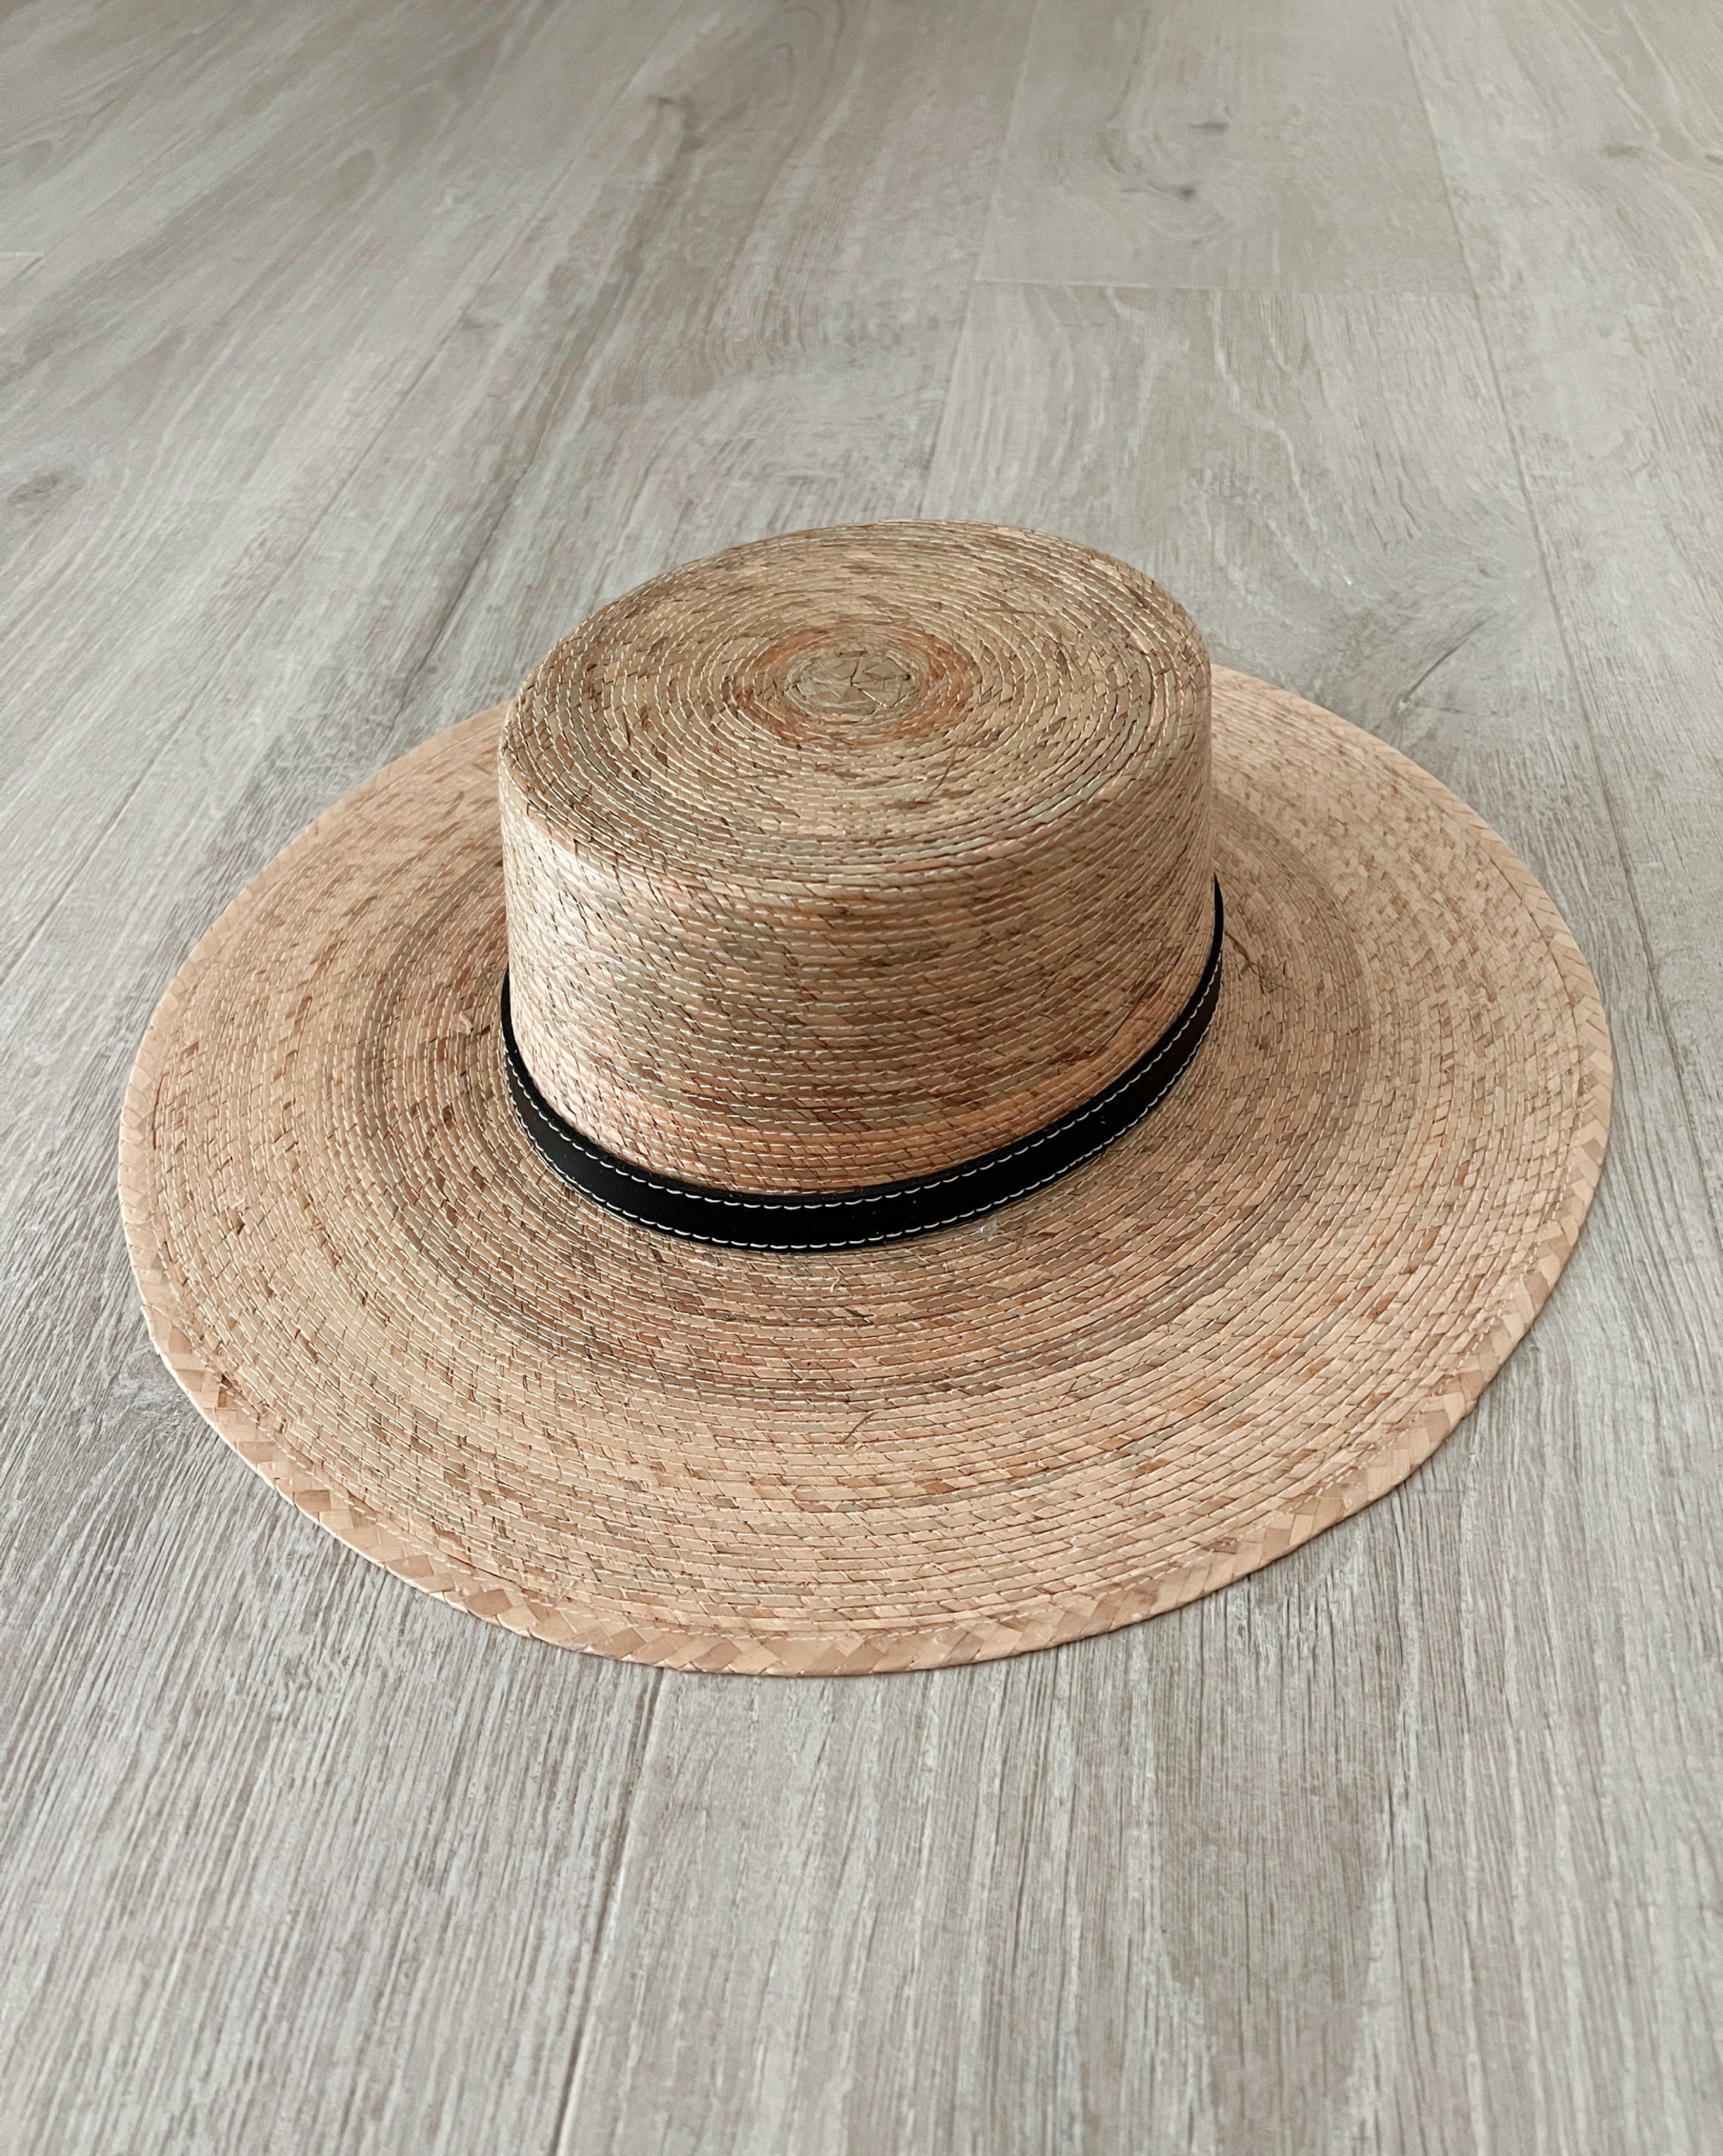 Cabo Wide Brim Hat